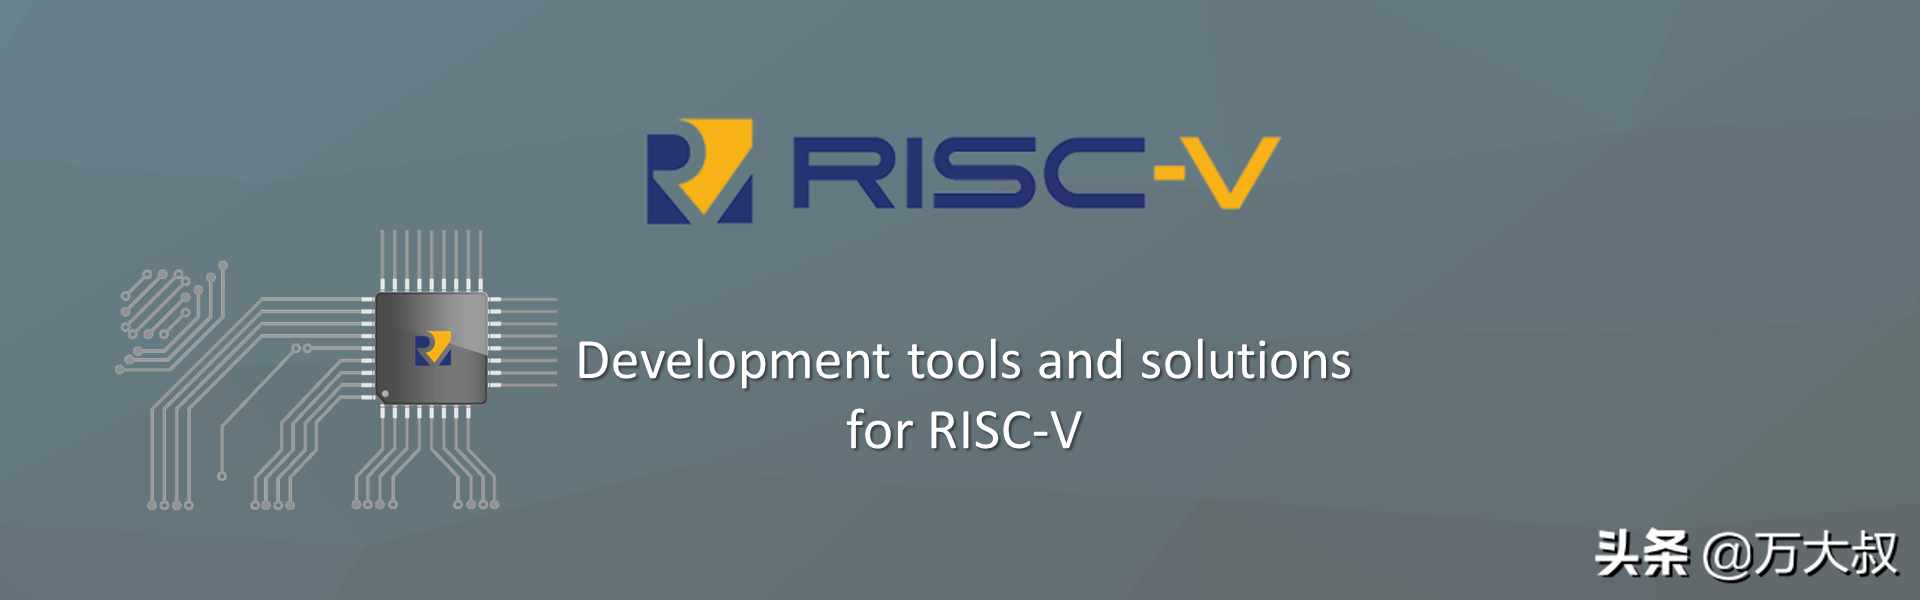 全球首款RISC-V DSP芯片问世，中国制造并量产，国产芯片取得突破-生产dsp芯片的上市公司